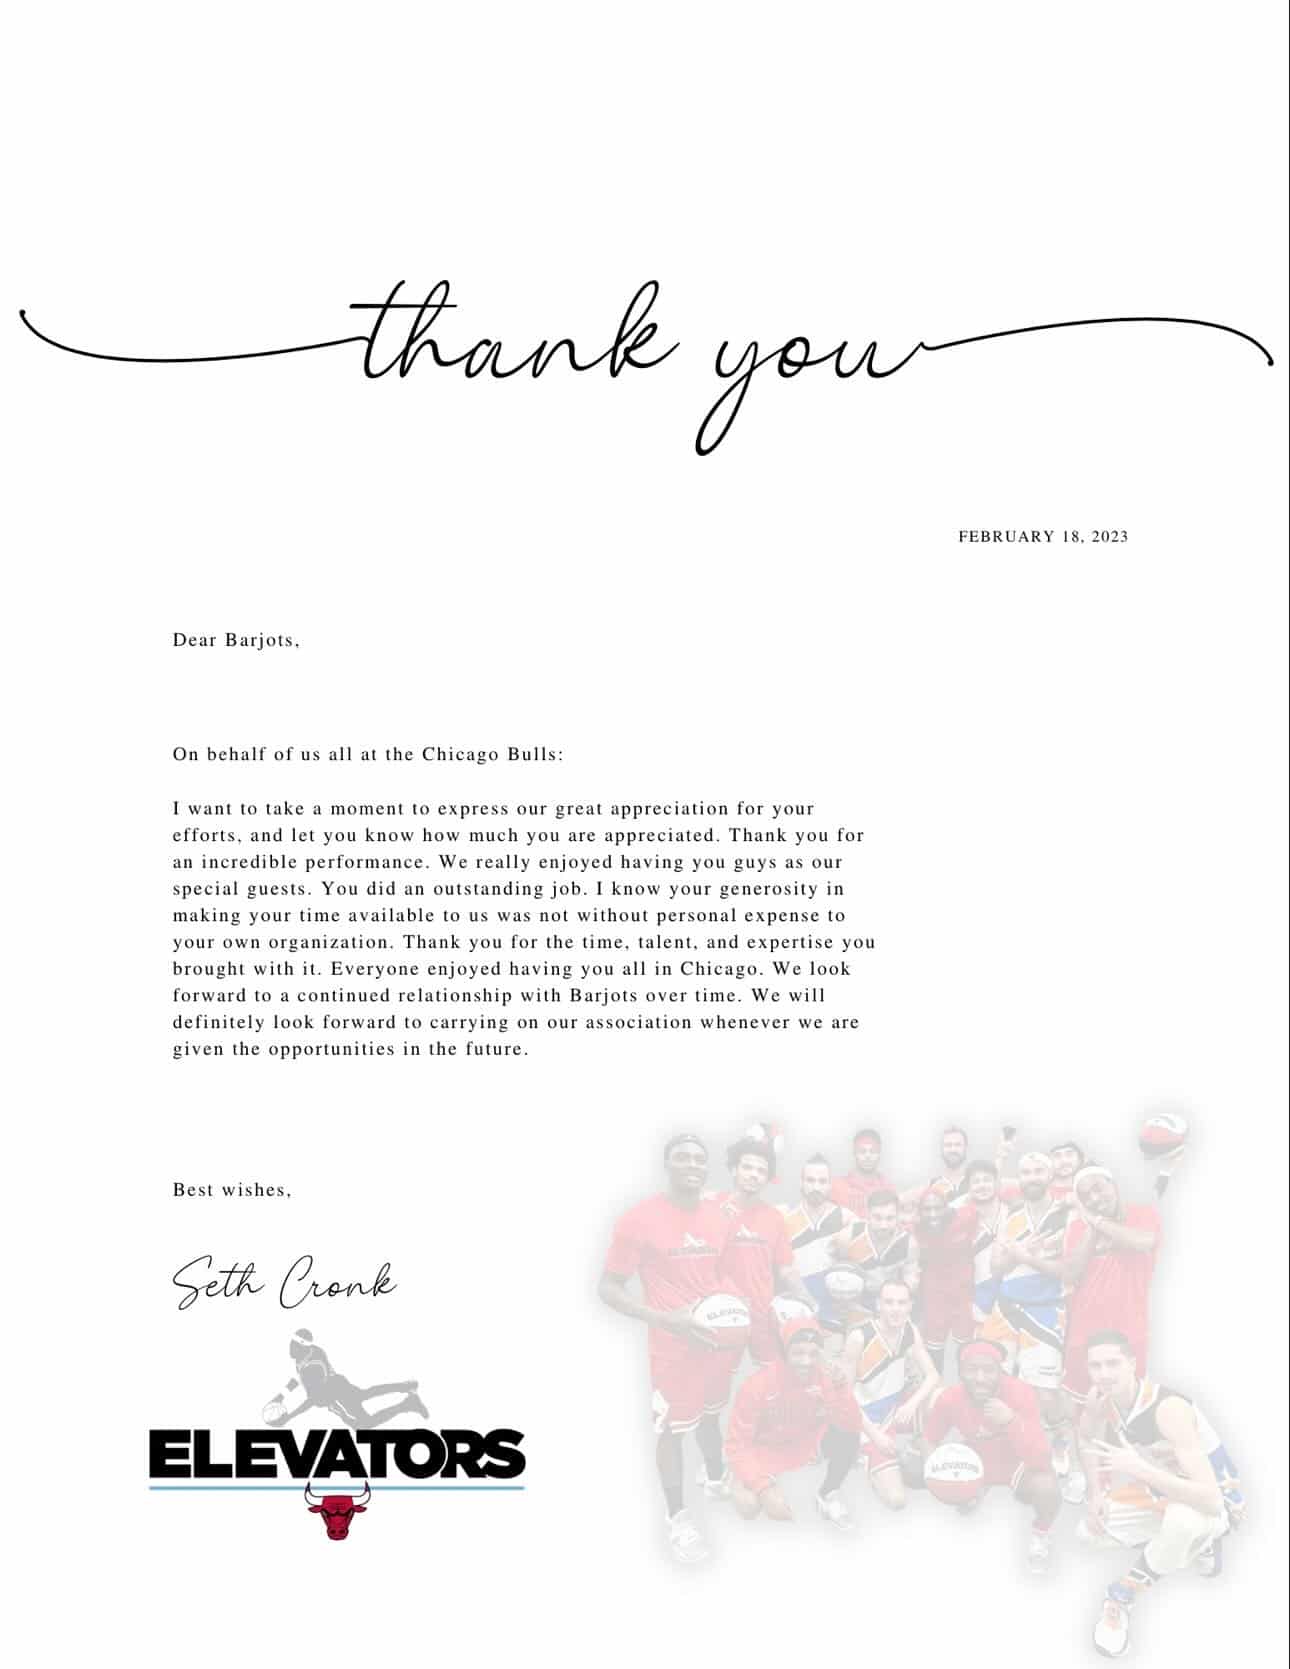 Message de remerciement des Bulls Elevators, équipe de basket acrobatique officielle des Chicago Bulls lors de notre show NBA à Chicago